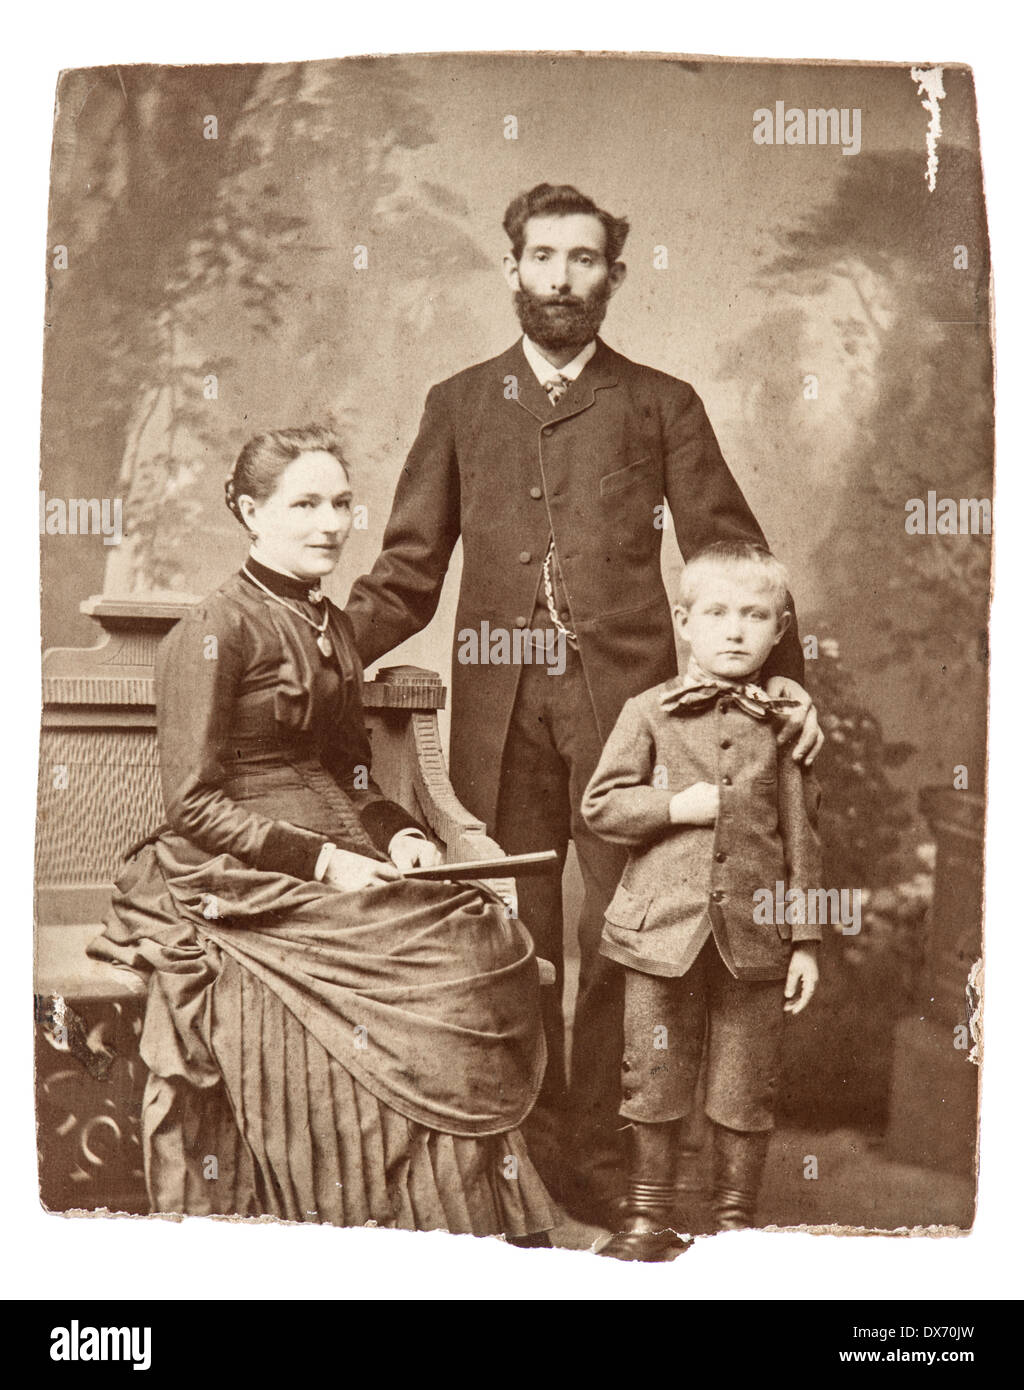 Berlino, Germania - circa 1860: antico ritratto di famiglia della madre, padre e figlio di indossare abbigliamento vintage, circa 1860 a Berlino, Foto Stock